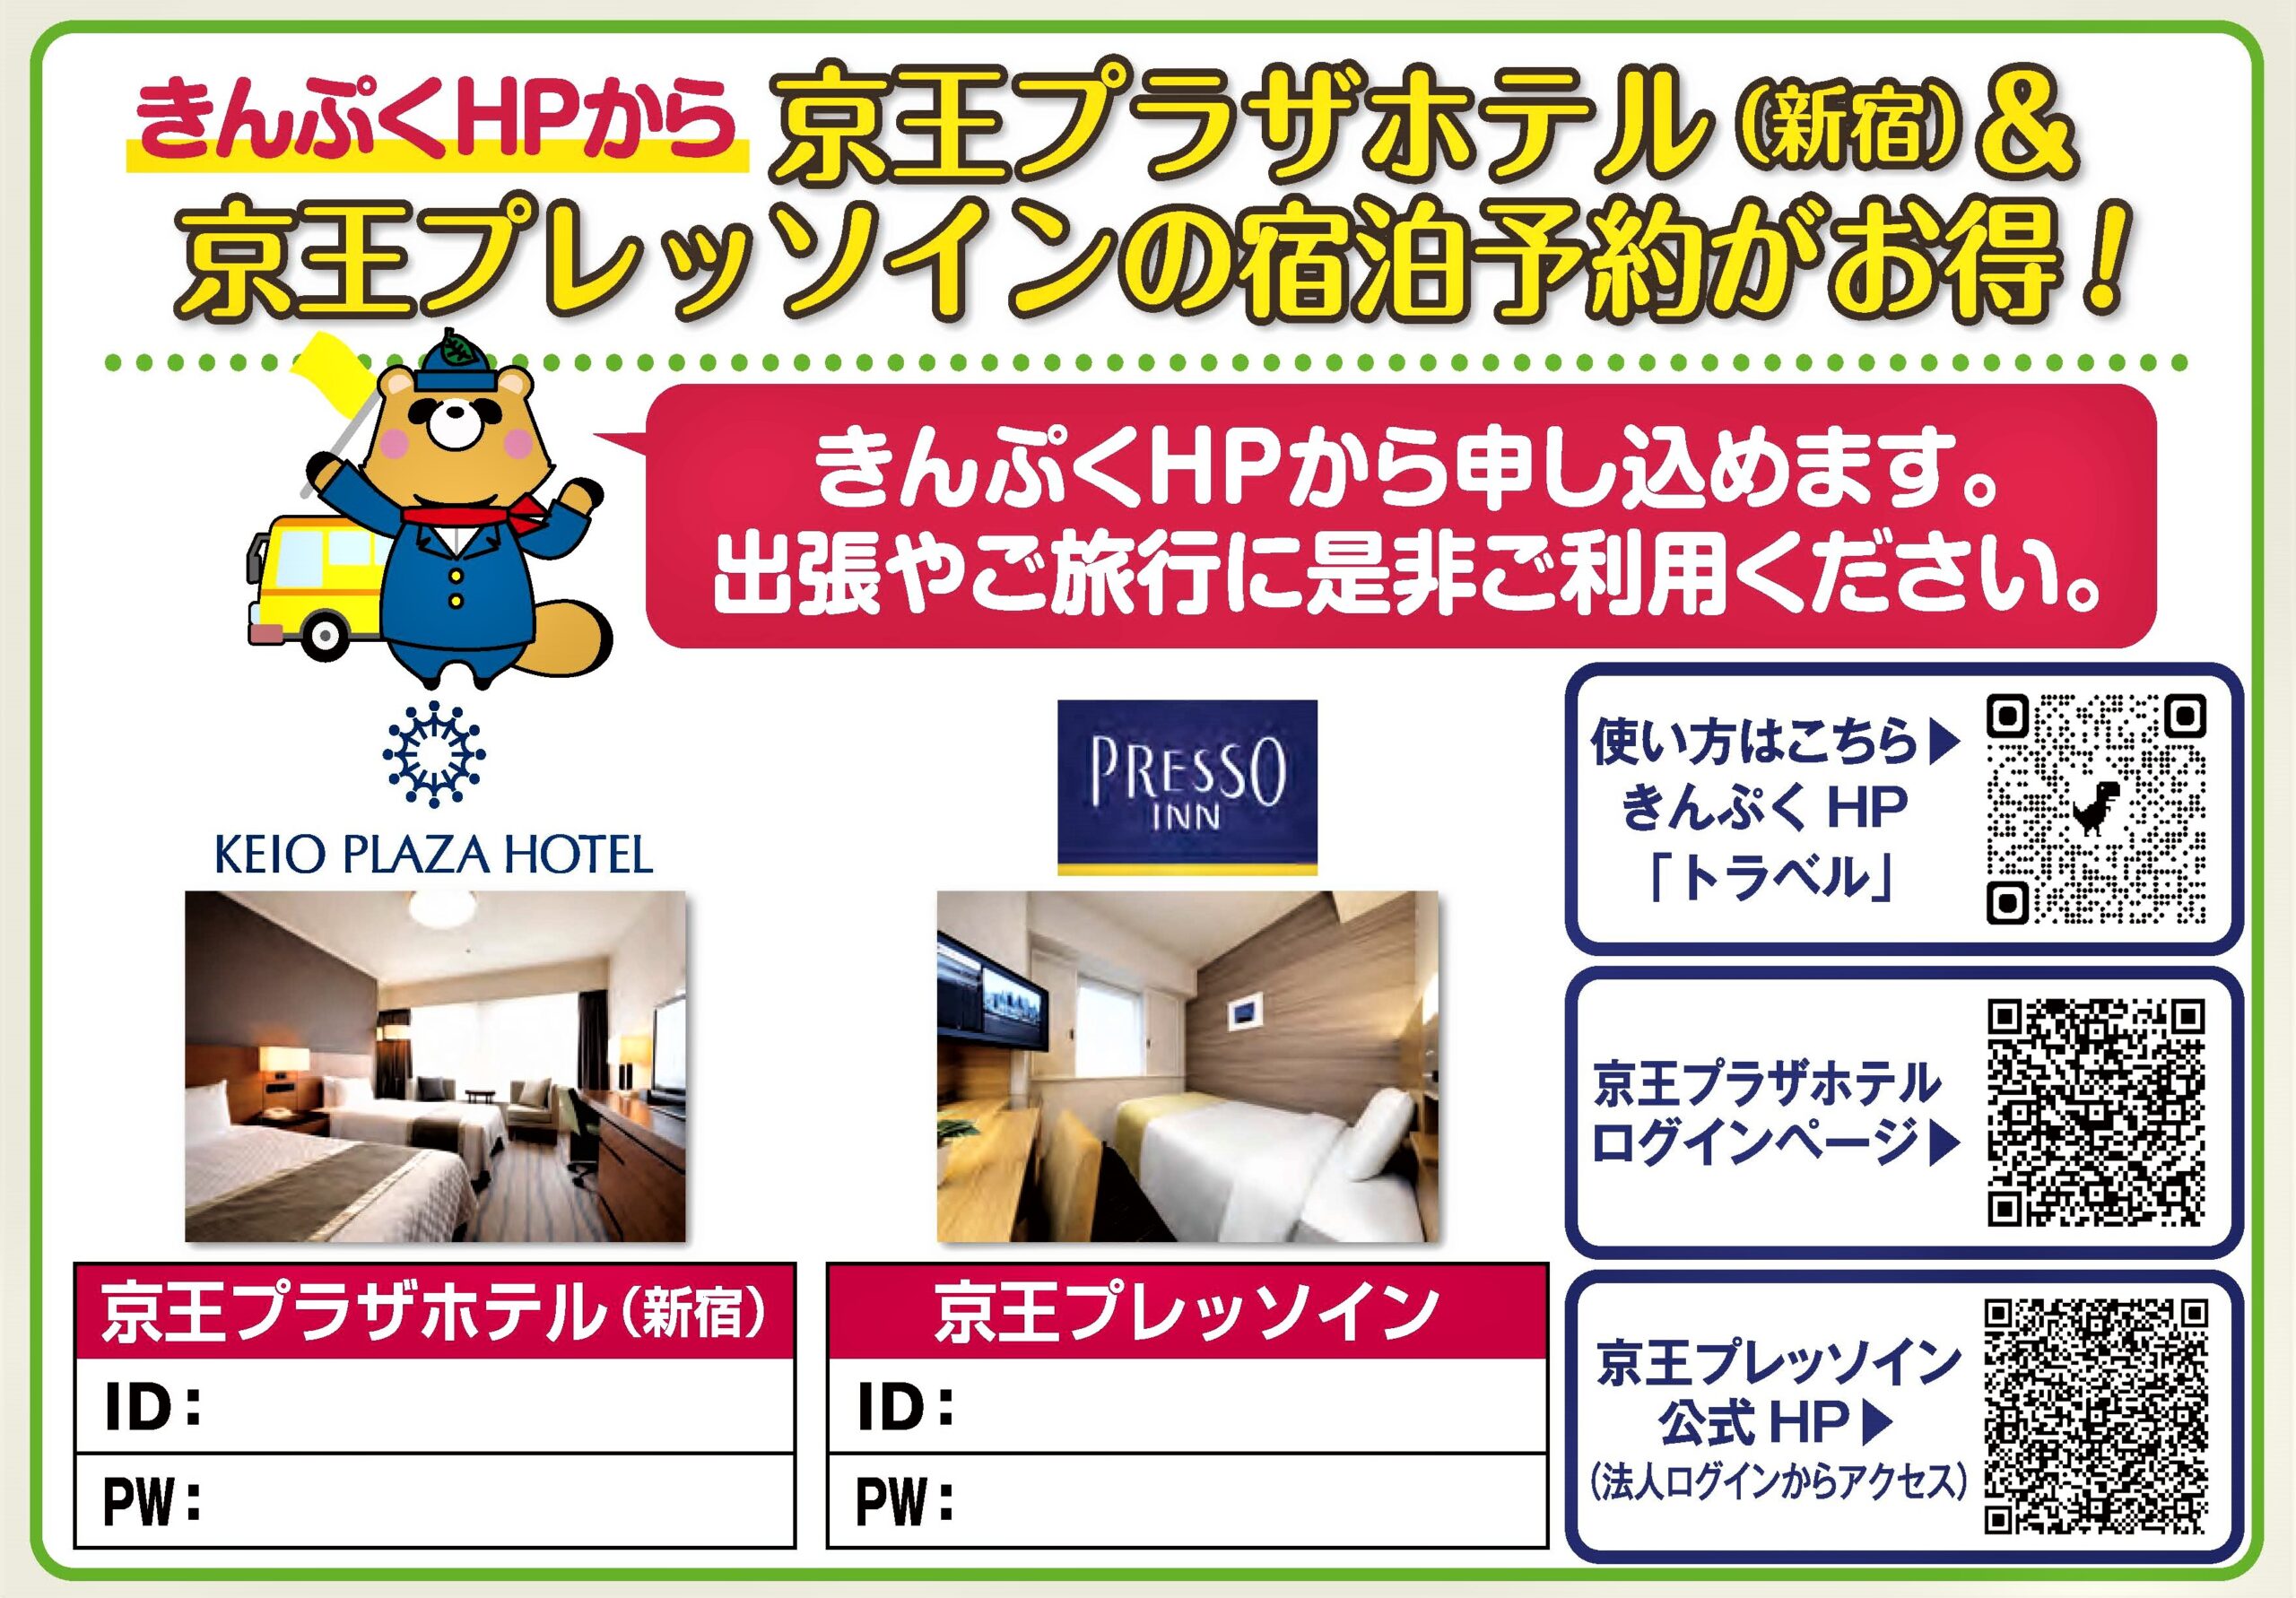 NEW！京王プラザホテル（新宿）・京王プレッソイン宿泊予約ができる様になりました。